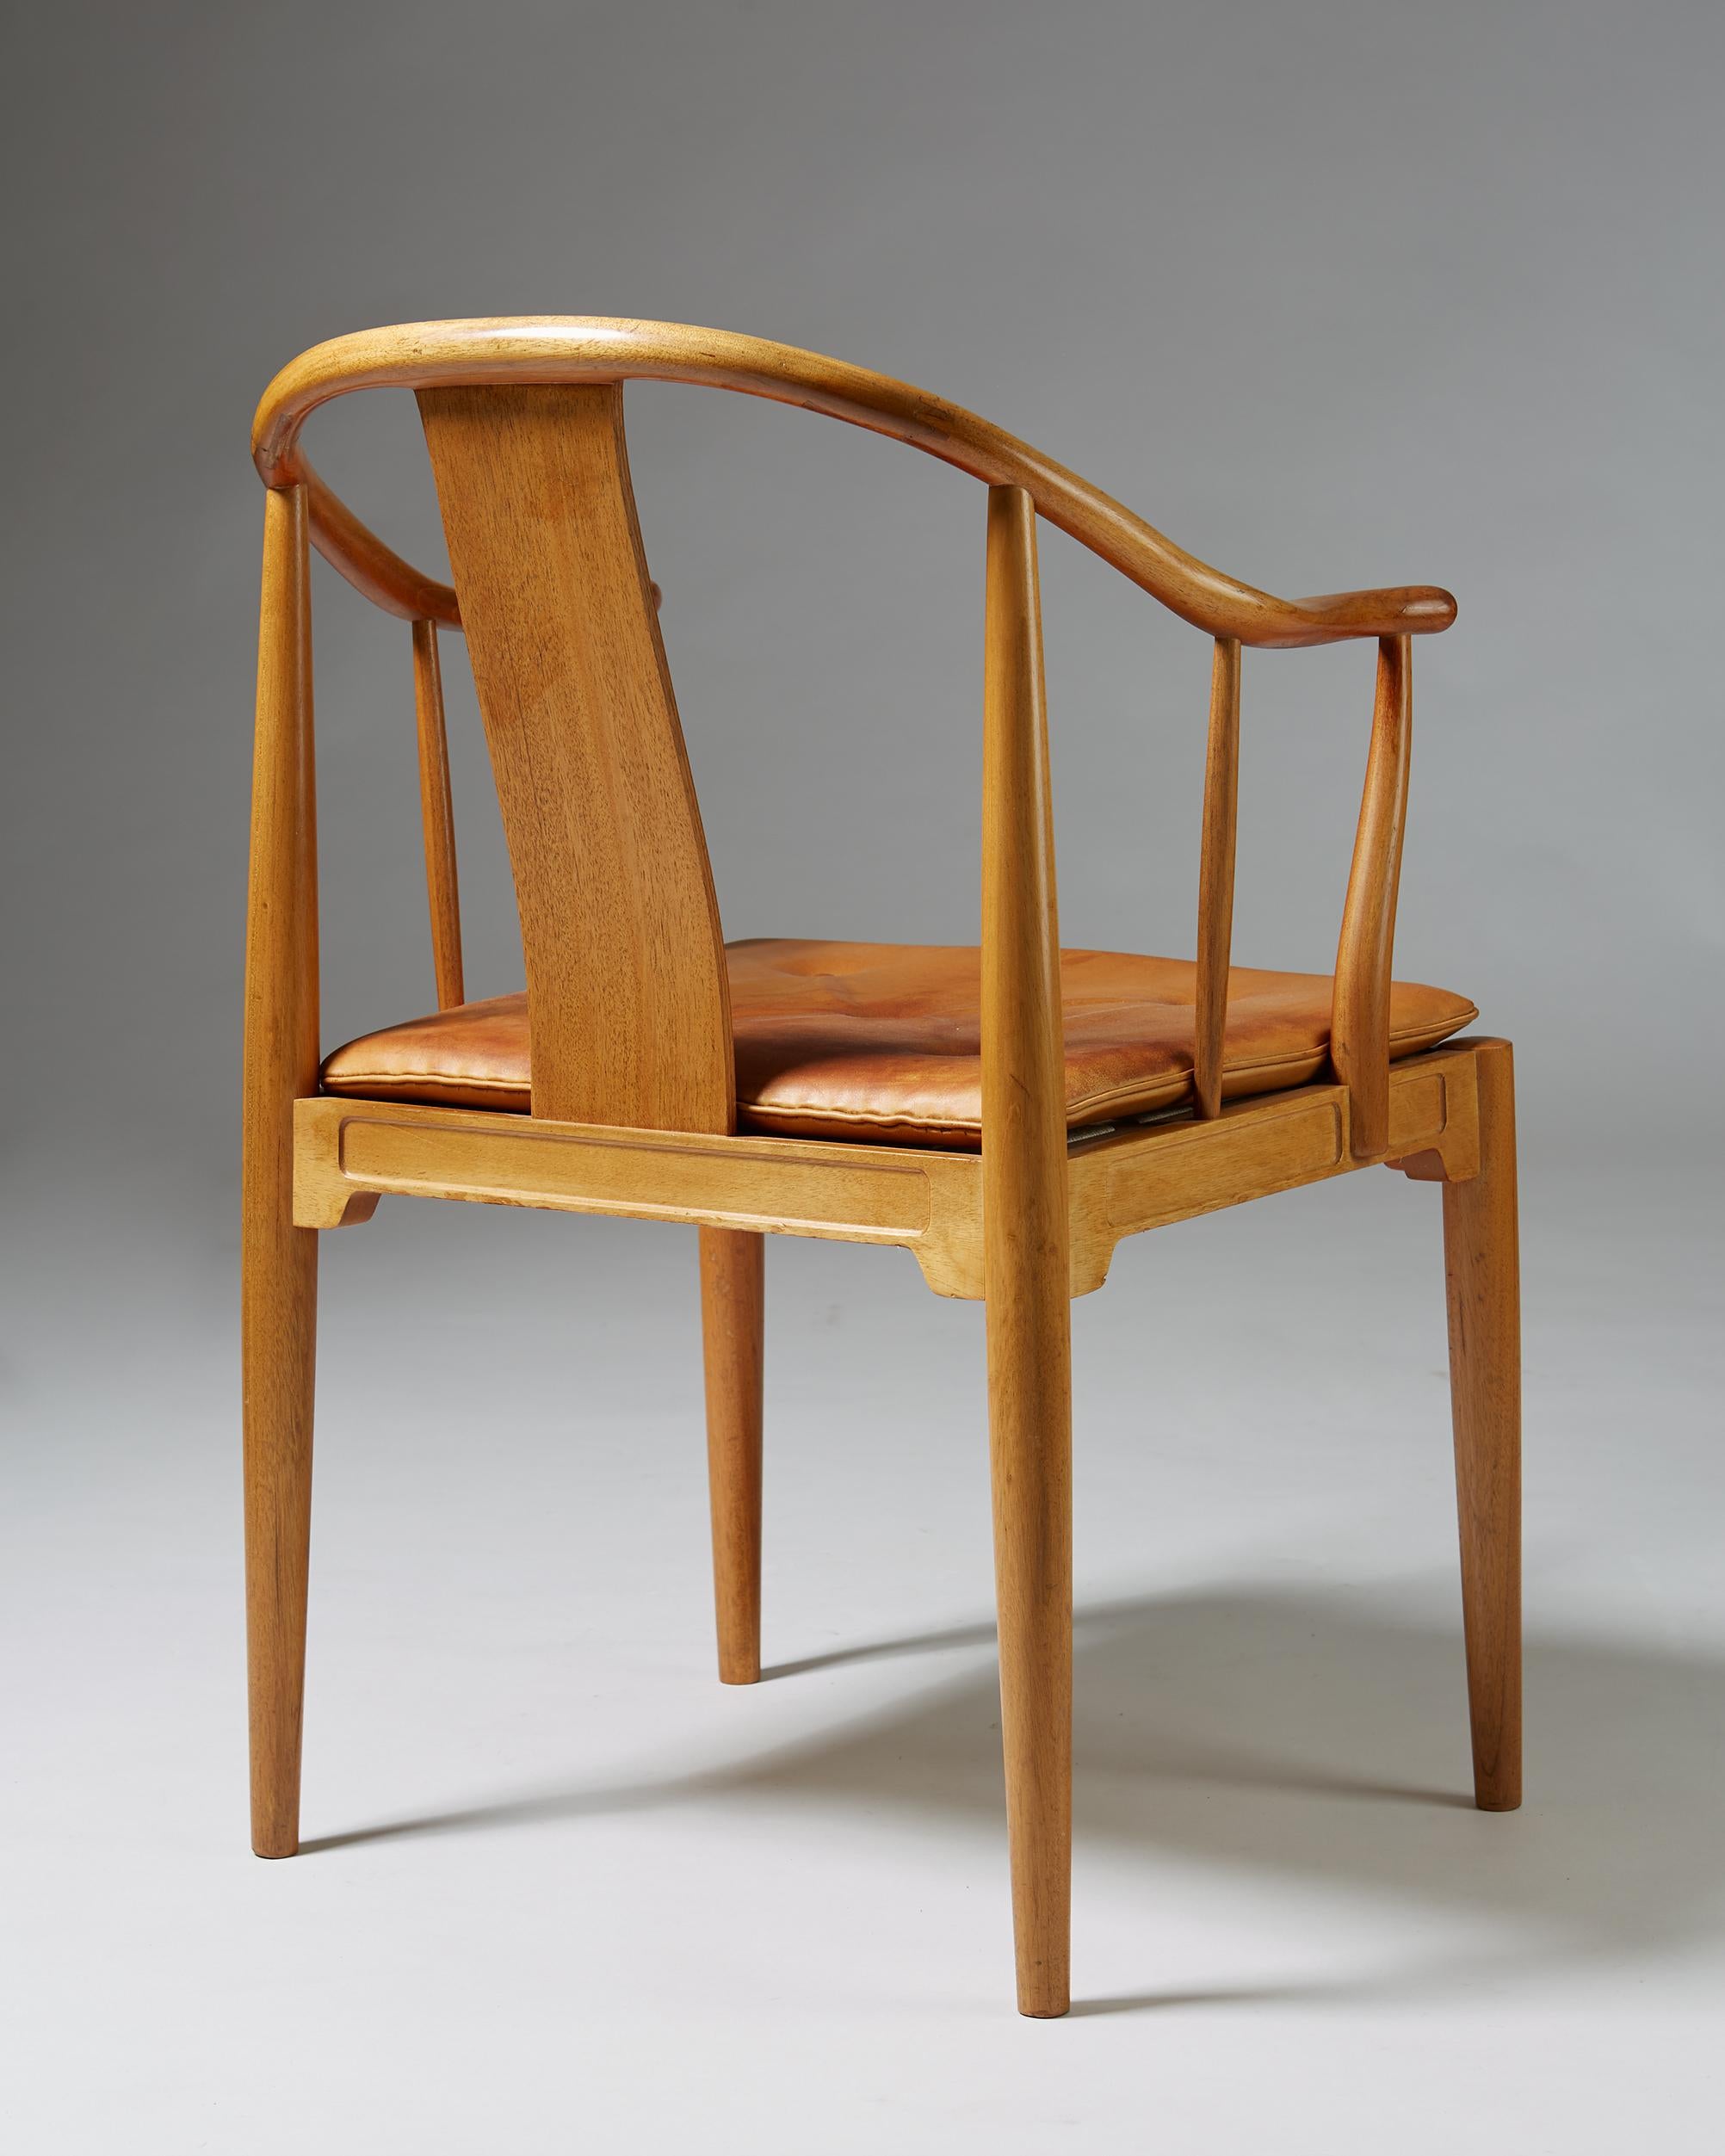 Late 20th Century China Chair Designed by Hans J. Wegner for Fritz Hansen, Denmark, 1980s